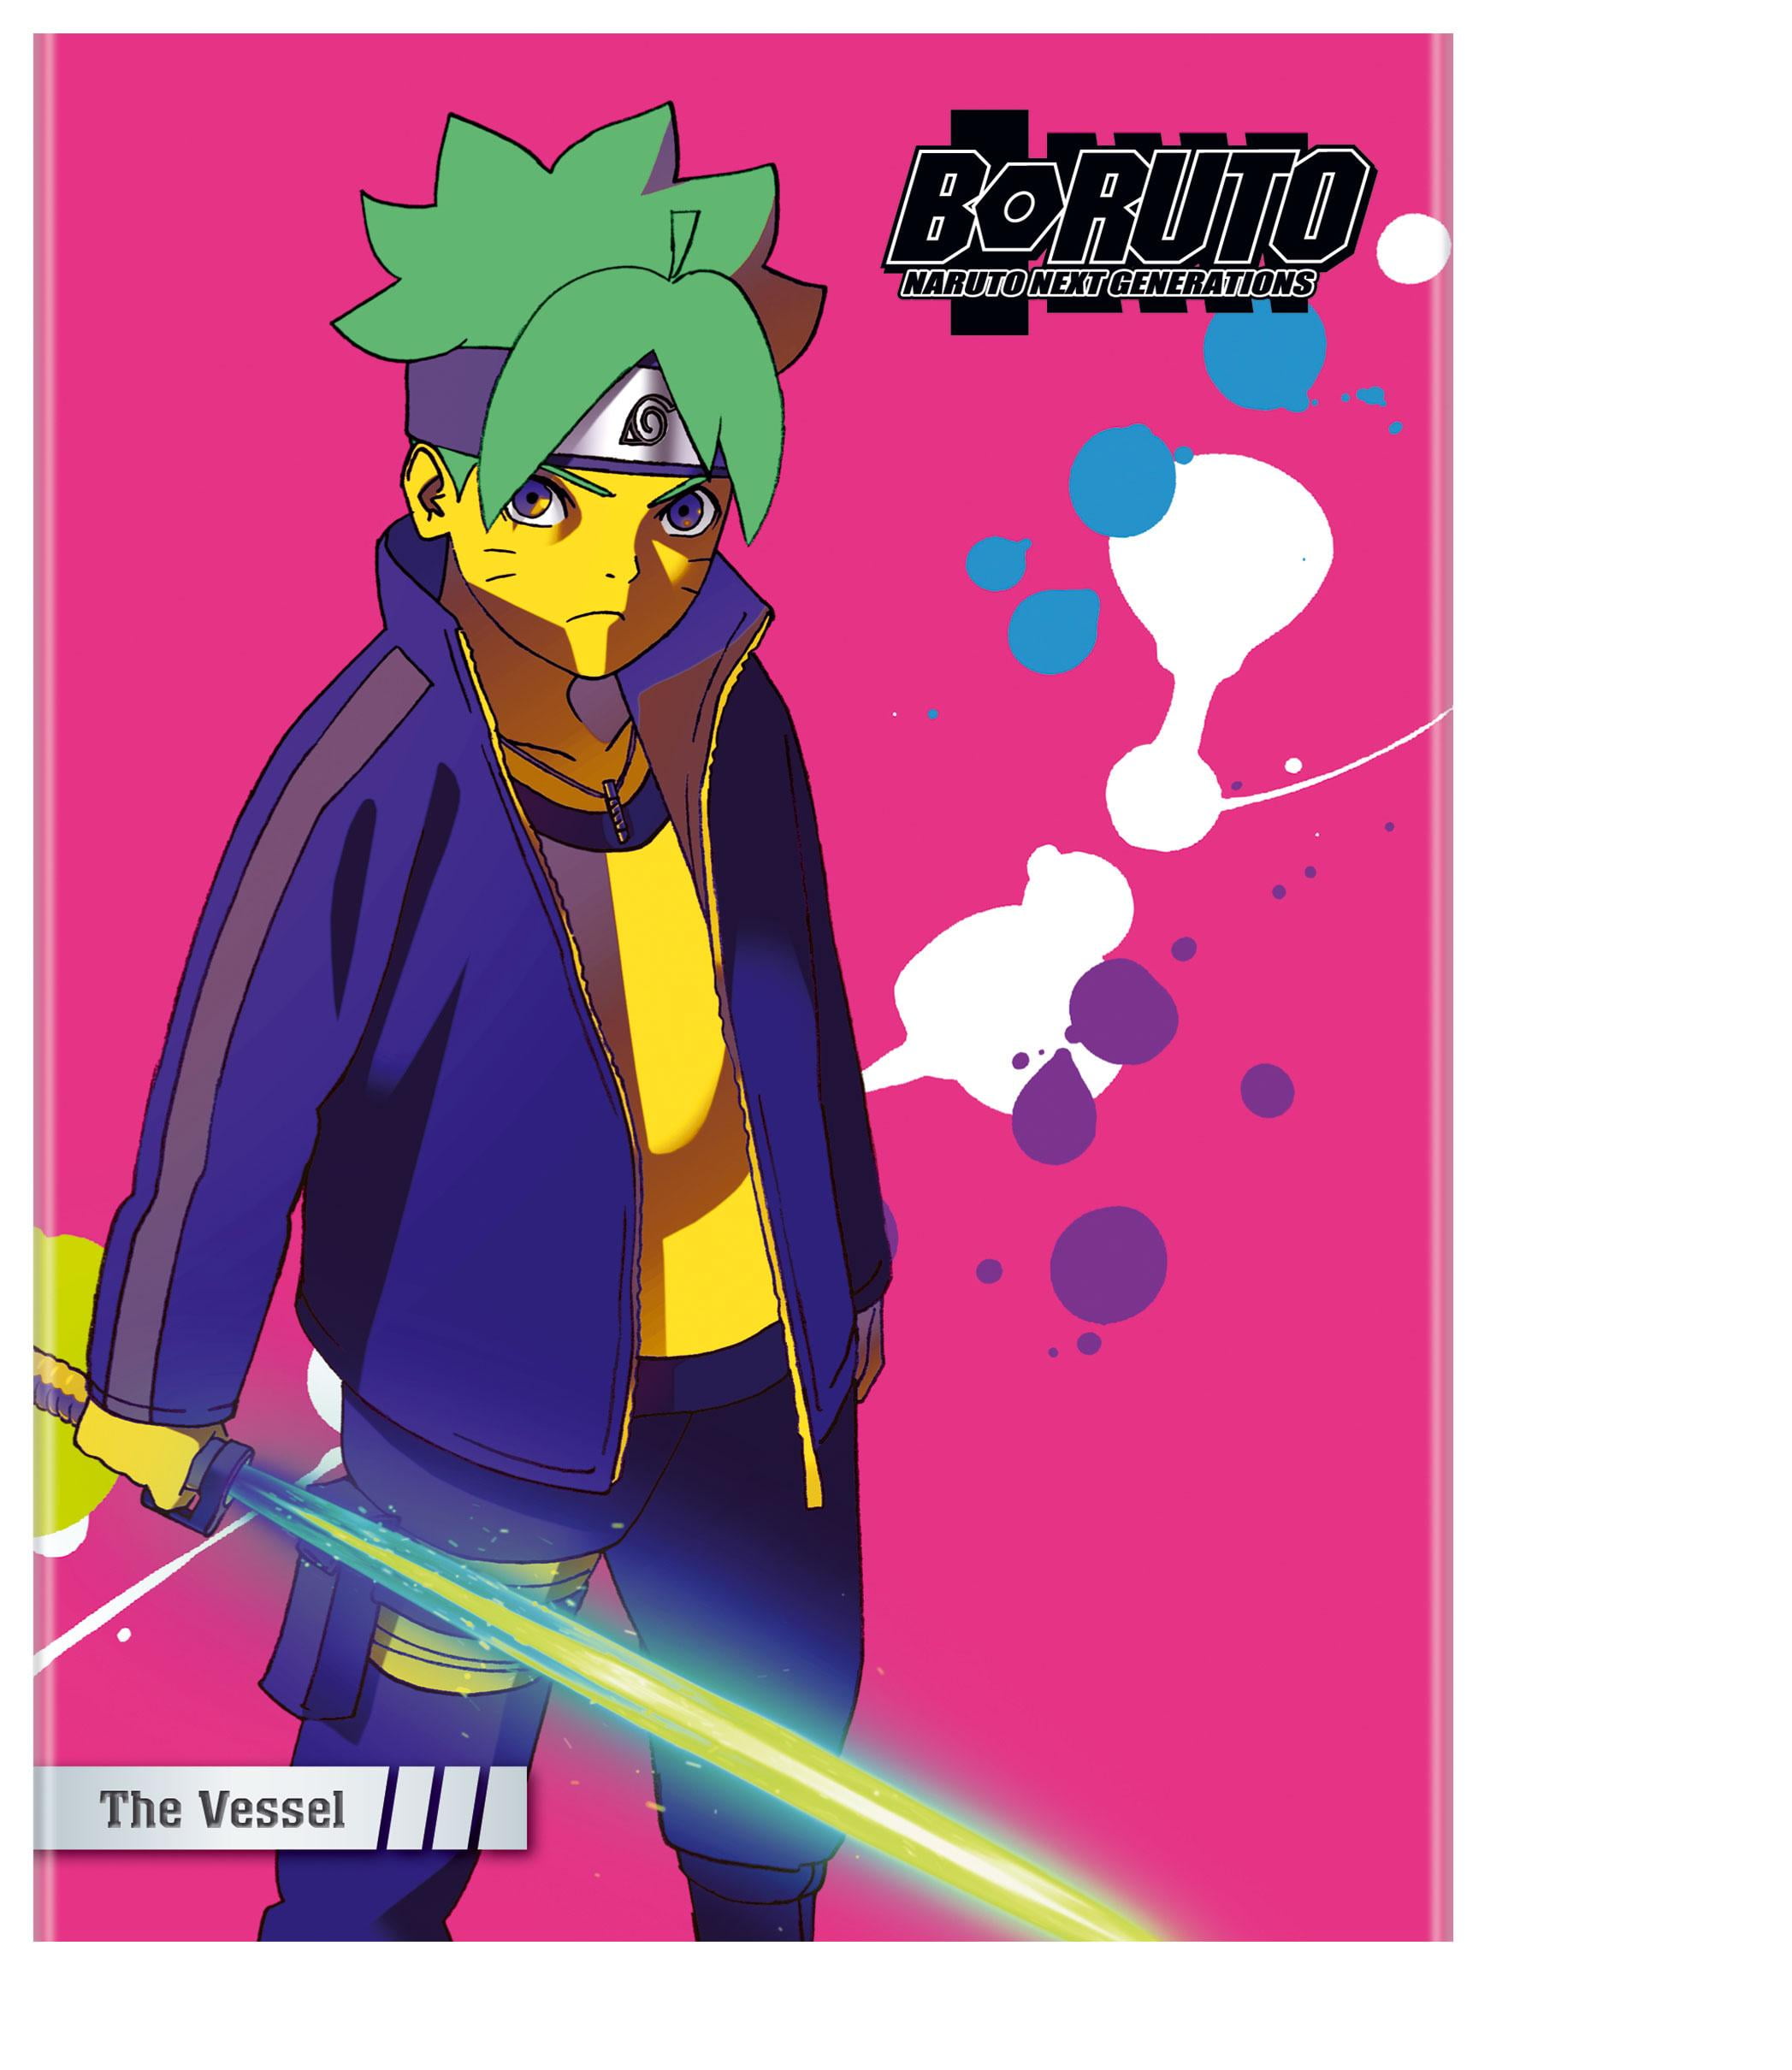 Boruto - Naruto Next Generations - Vol. 07 no Shoptime